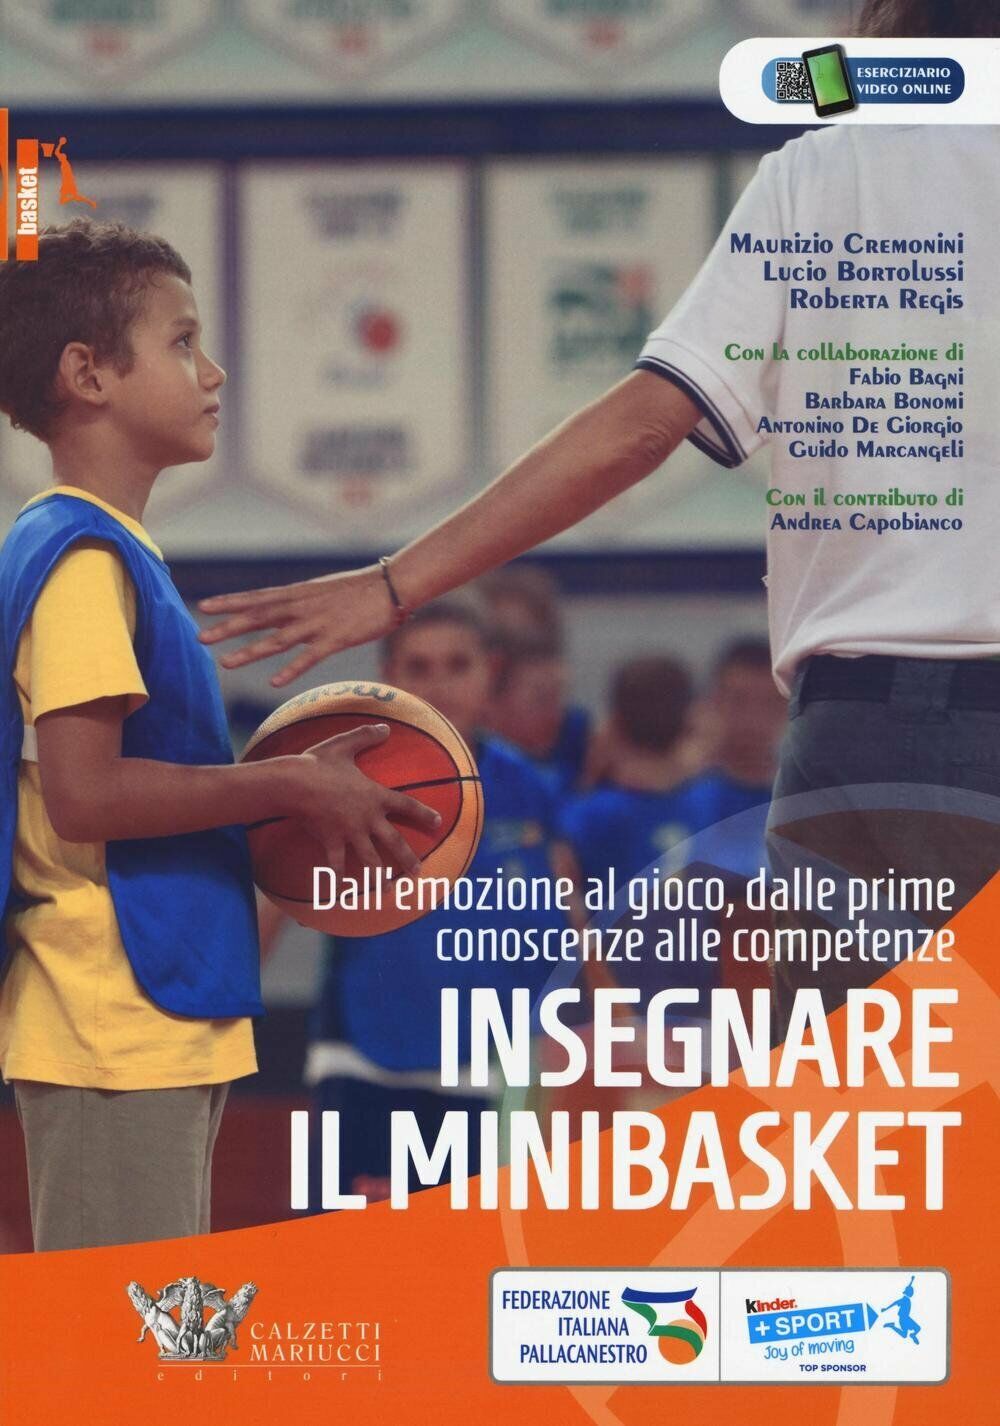 Insegnare il minibasket - Cremonini, Bortolussi,Regis - Calzetti Mariucci, 2016 